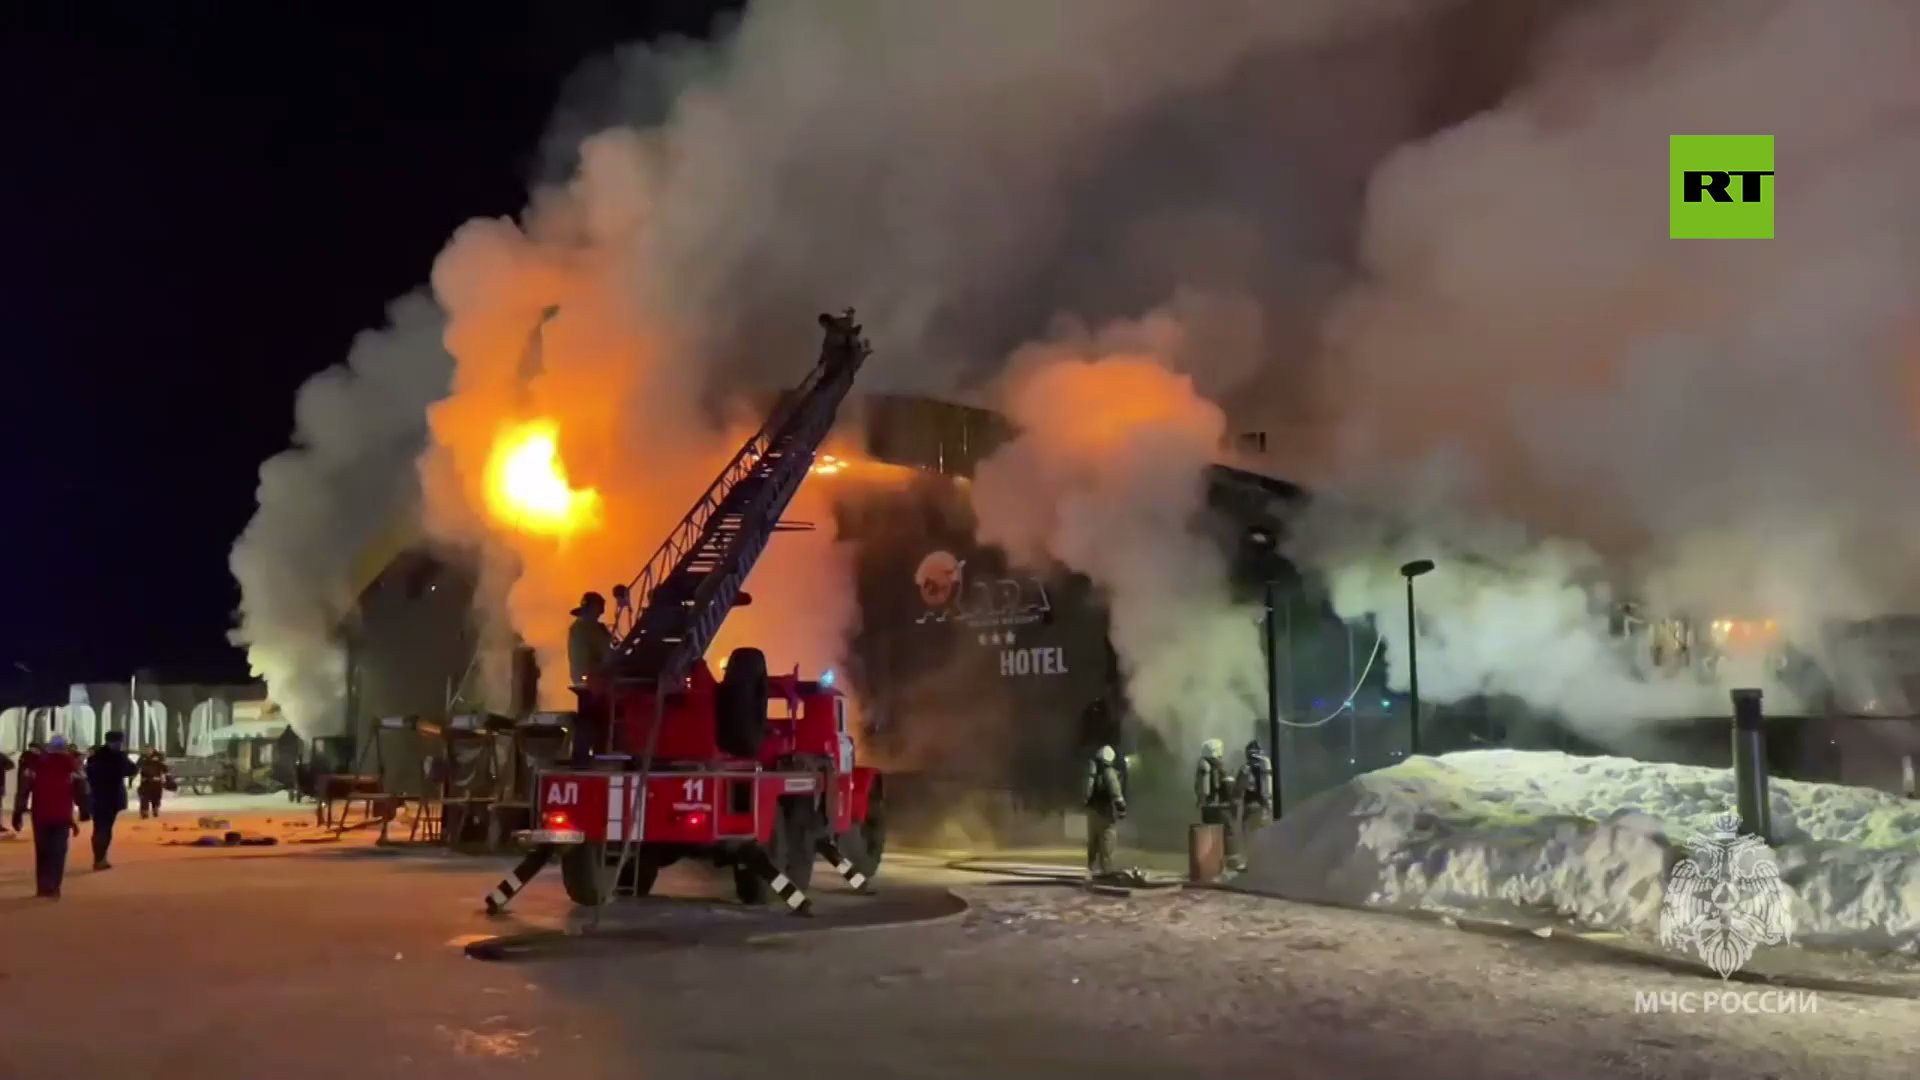 بالفيديو.. فرق الطوارئ تكافح حريقا كبيرا في مجمع فنادق بمدينة تولياتي الروسية